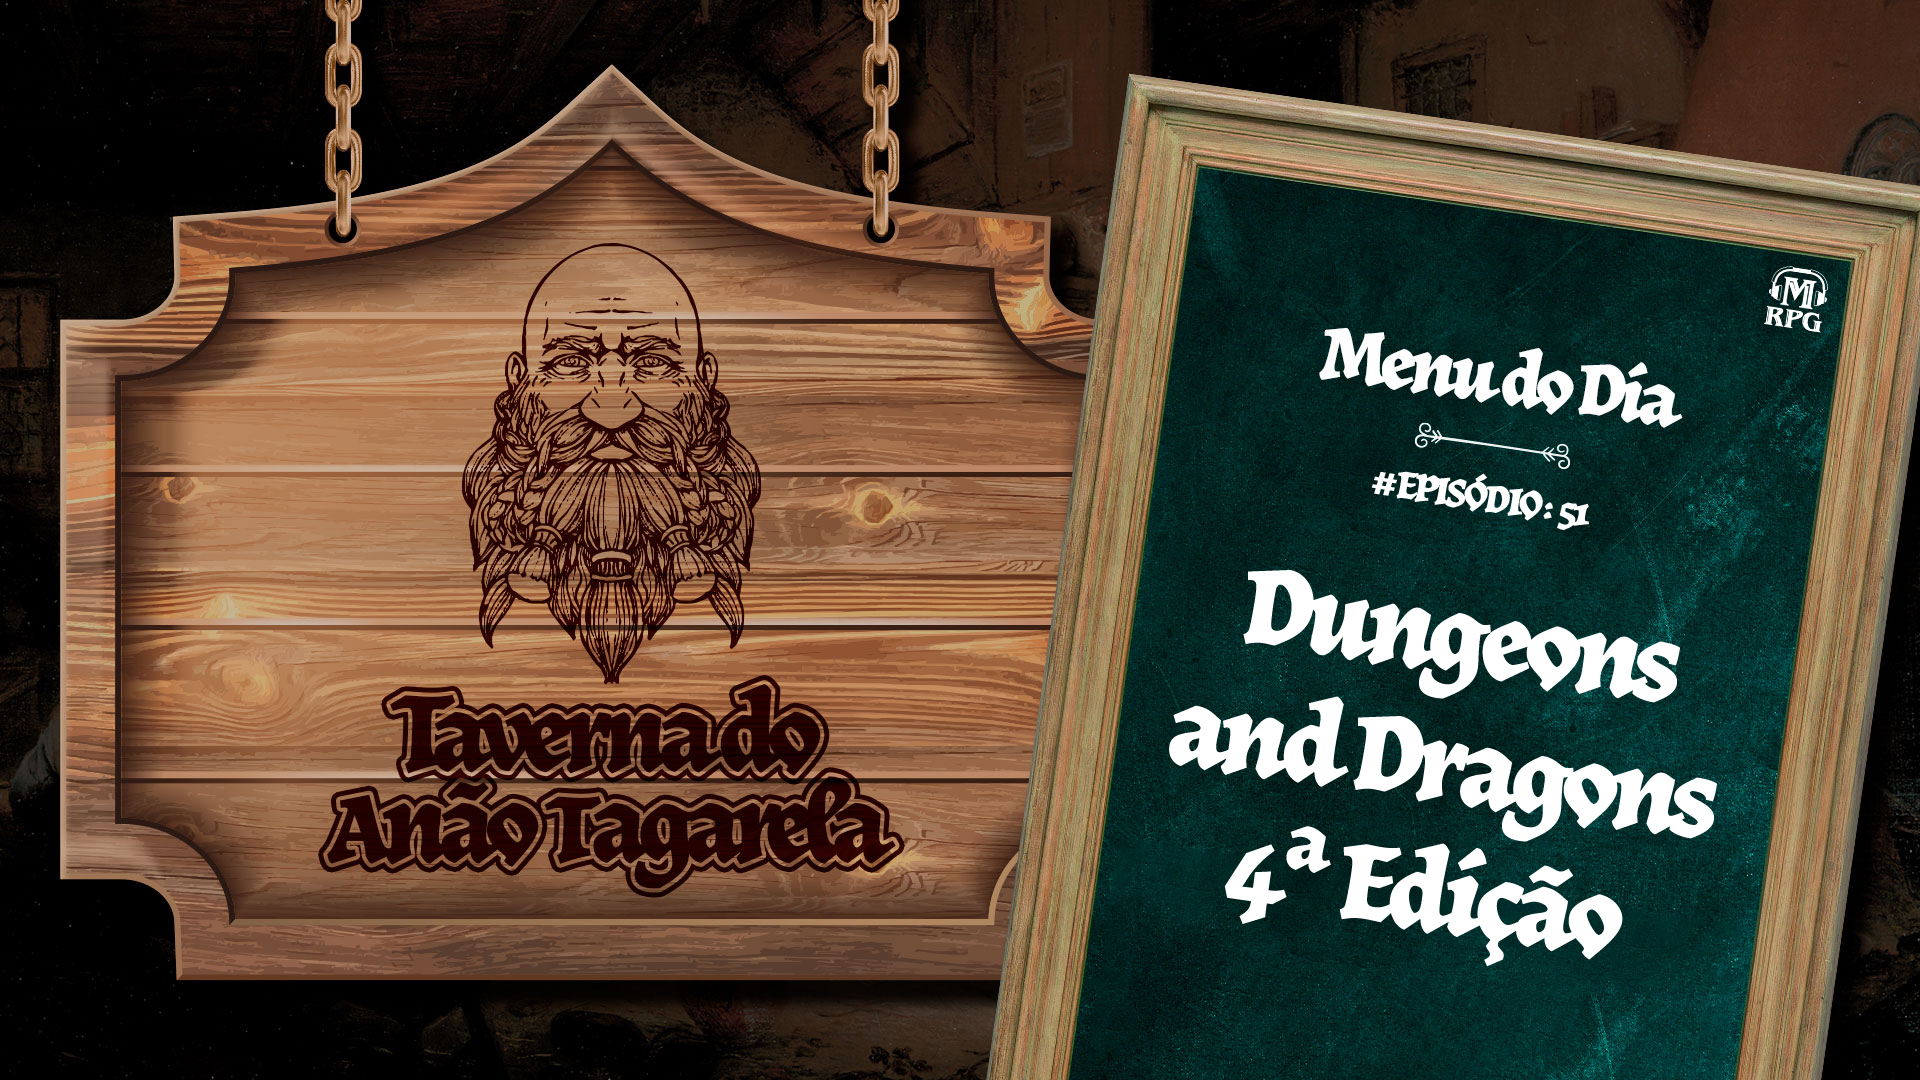 Dungeons and Dragons 4ª Edição – Taverna do Anão Tagarela #51